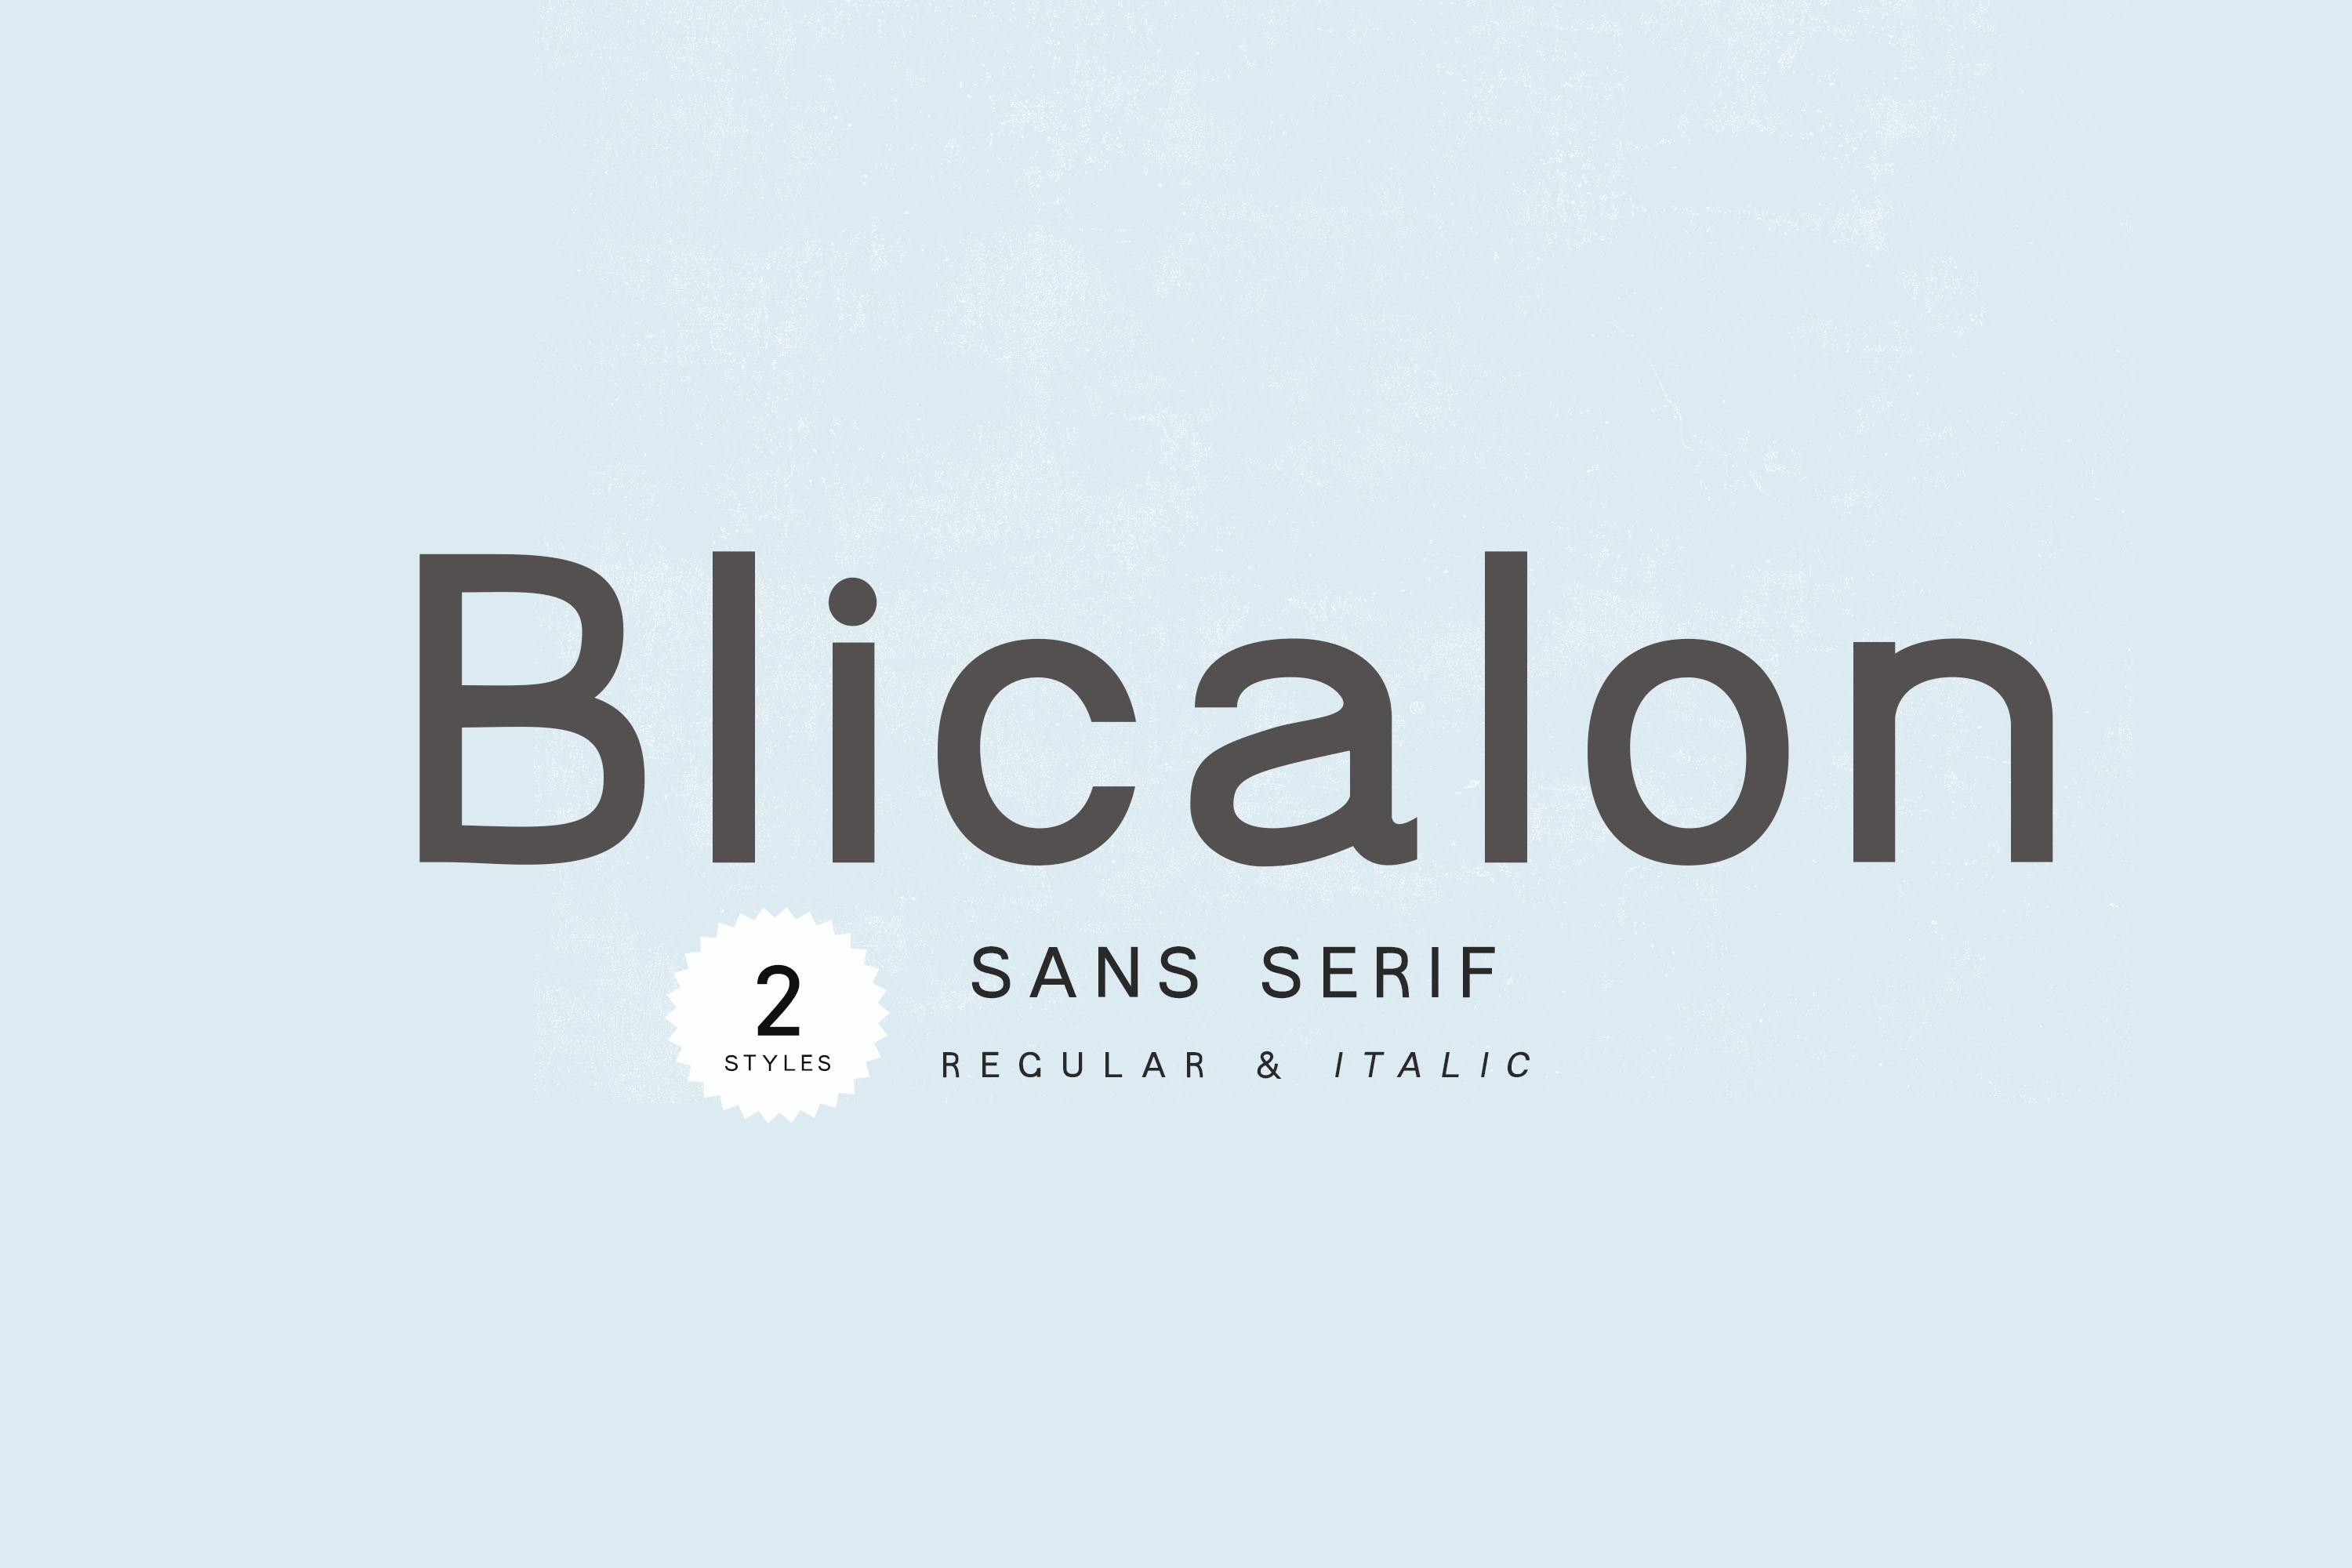 Blicalon Font